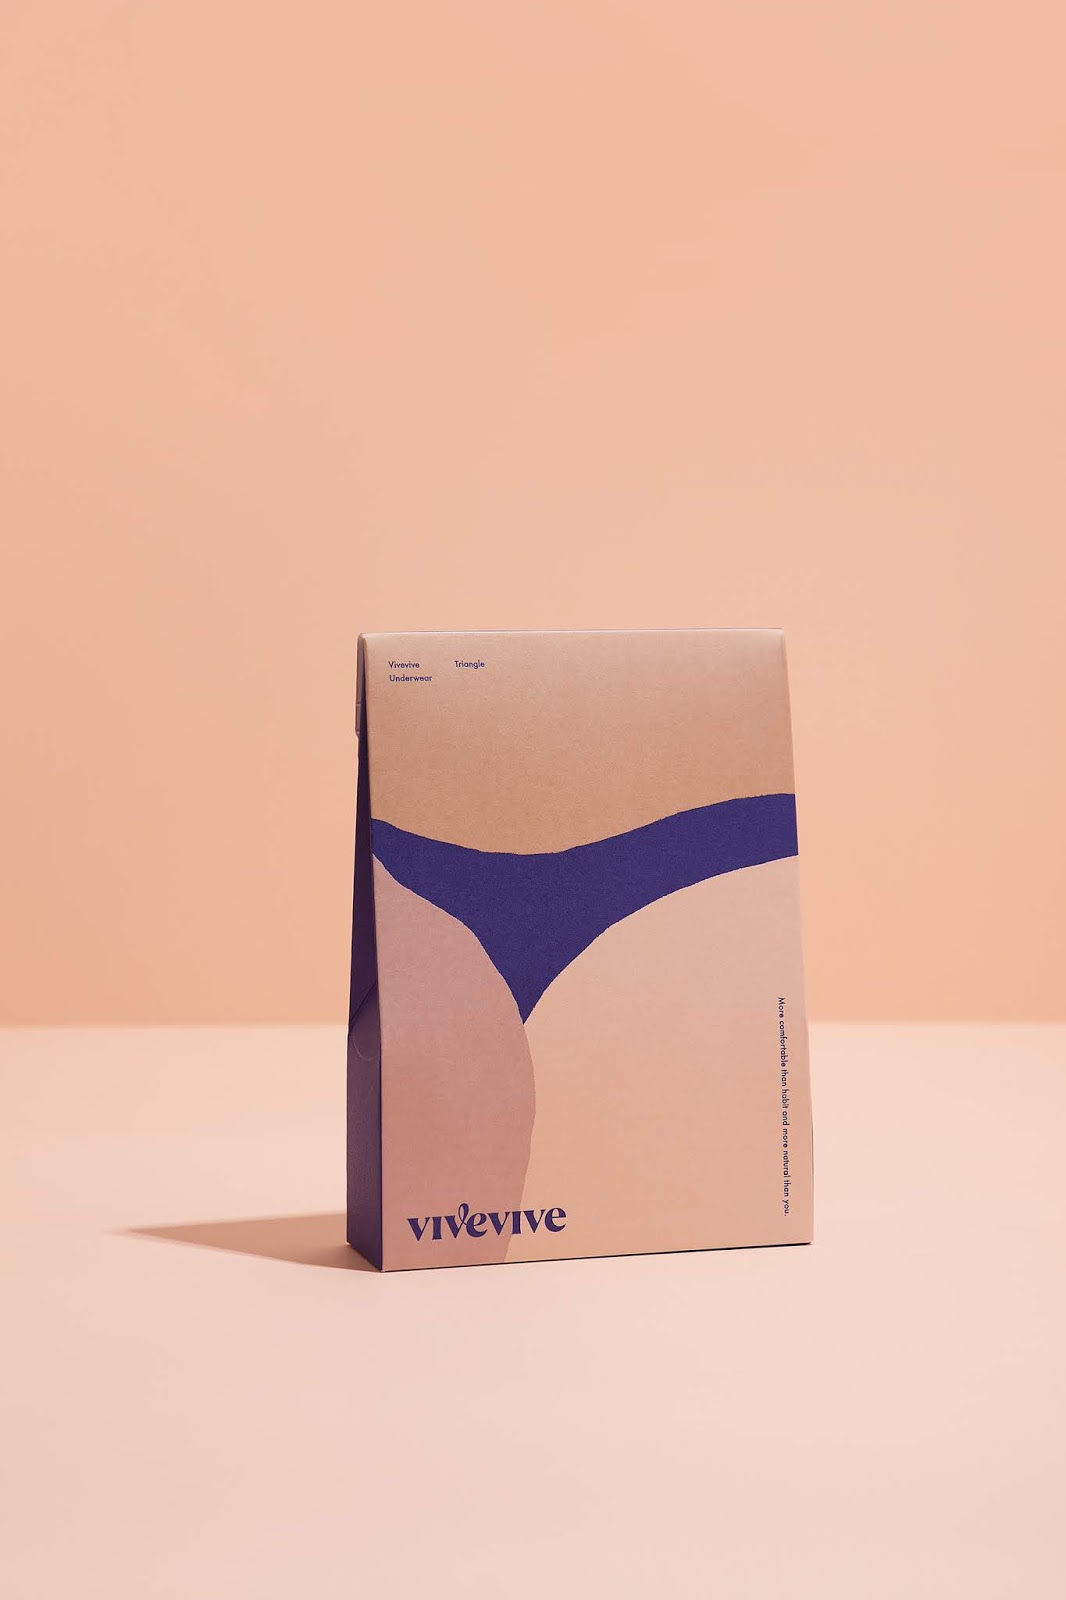 女性内衣女装服饰西安oe欧亿体育app官方下载
品牌策划包装设计VI设计logo设计